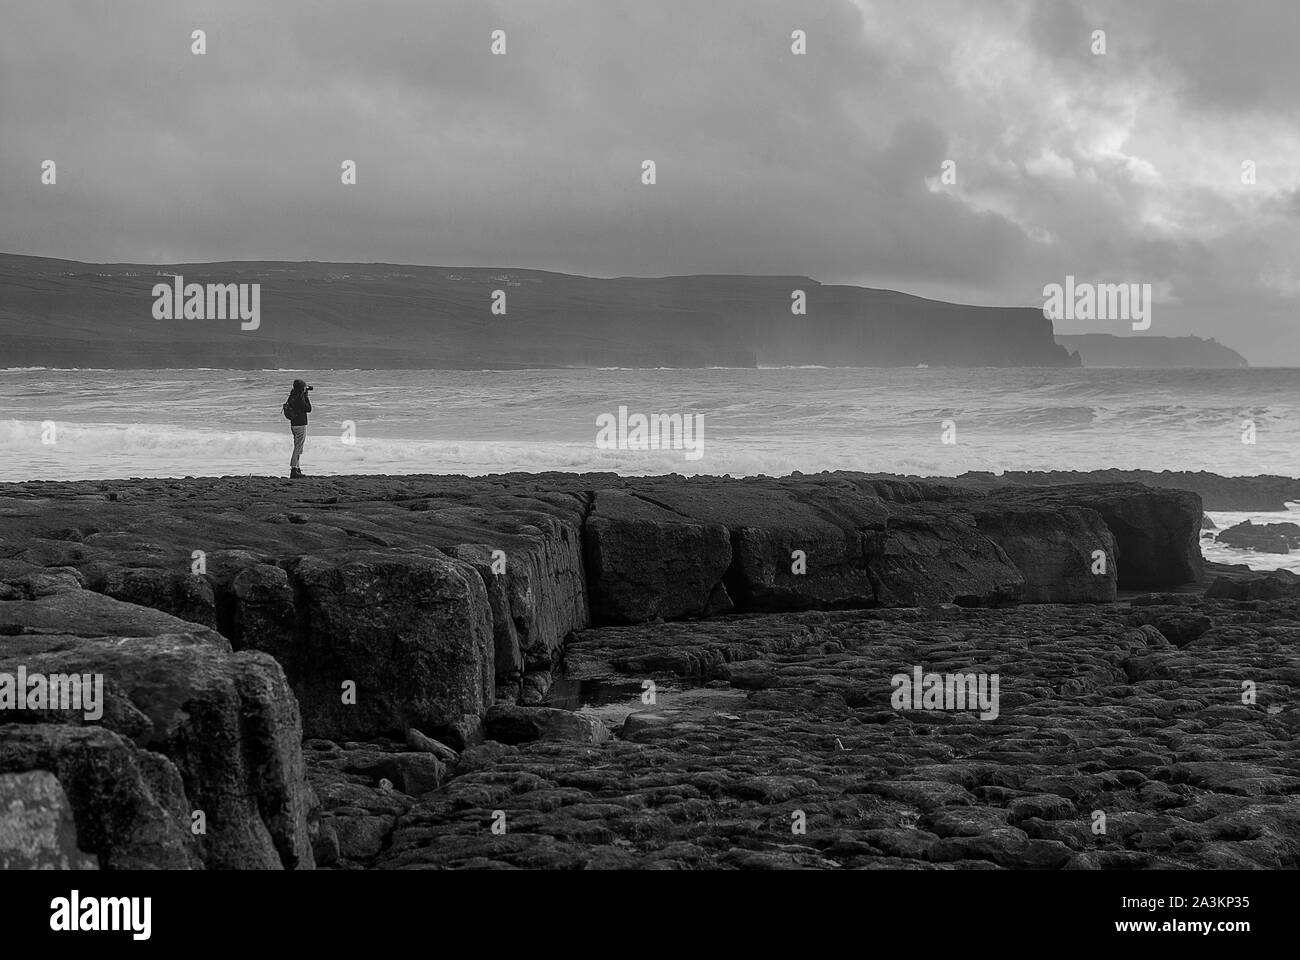 Silhouette d'une jeune femme à Doolin, l'Irlande, avec des falaises à l'arrière-plan. Ciel nuageux au coucher du soleil. Counnty Clare. De gros rochers au premier plan. De l'Atlantique sauvages Banque D'Images